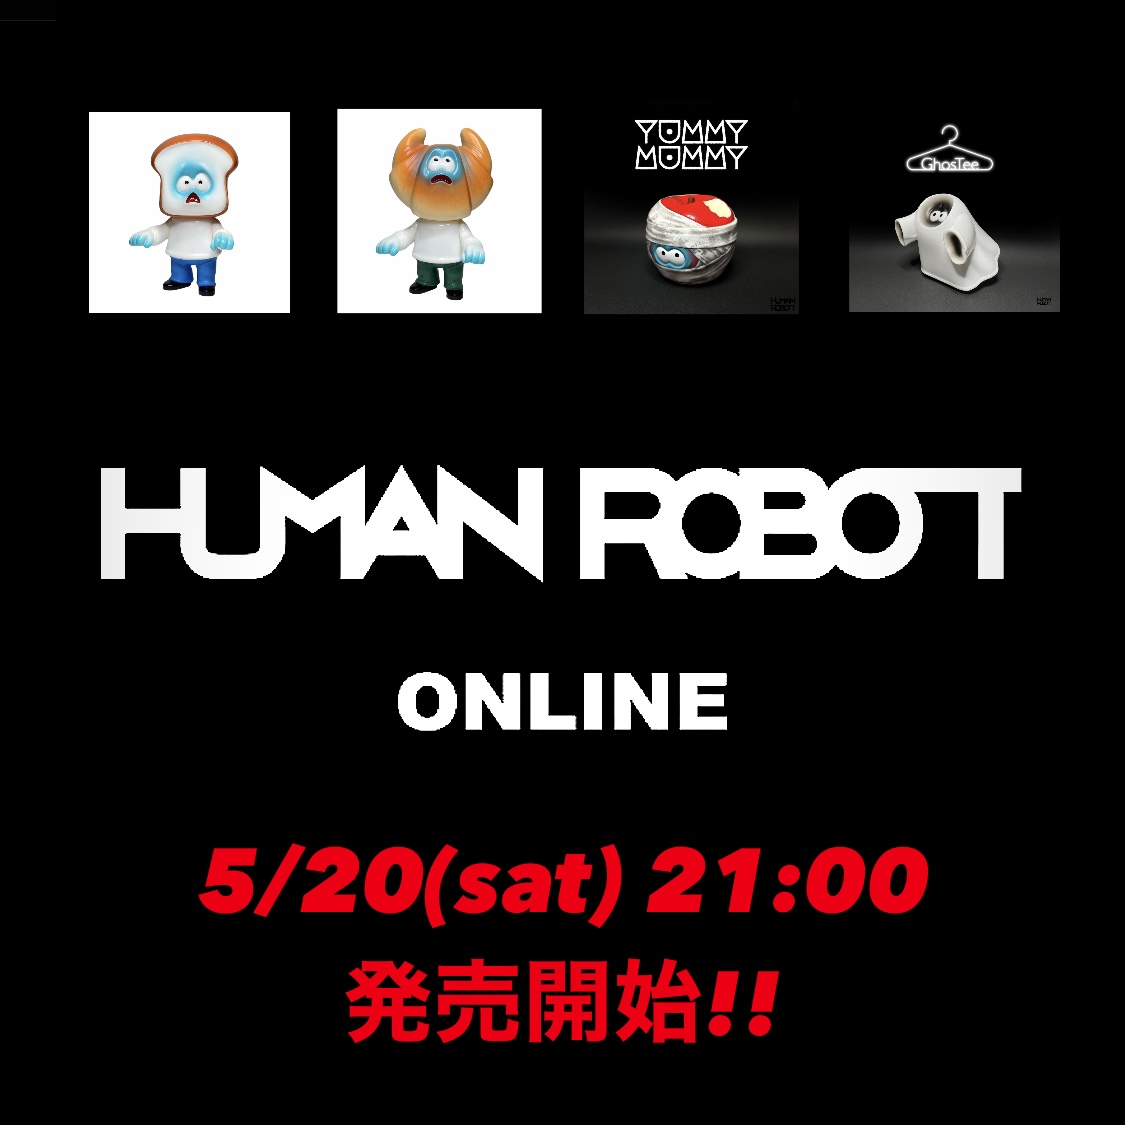 【5月20日発売開始】HUMAN ROBOT ONLINE